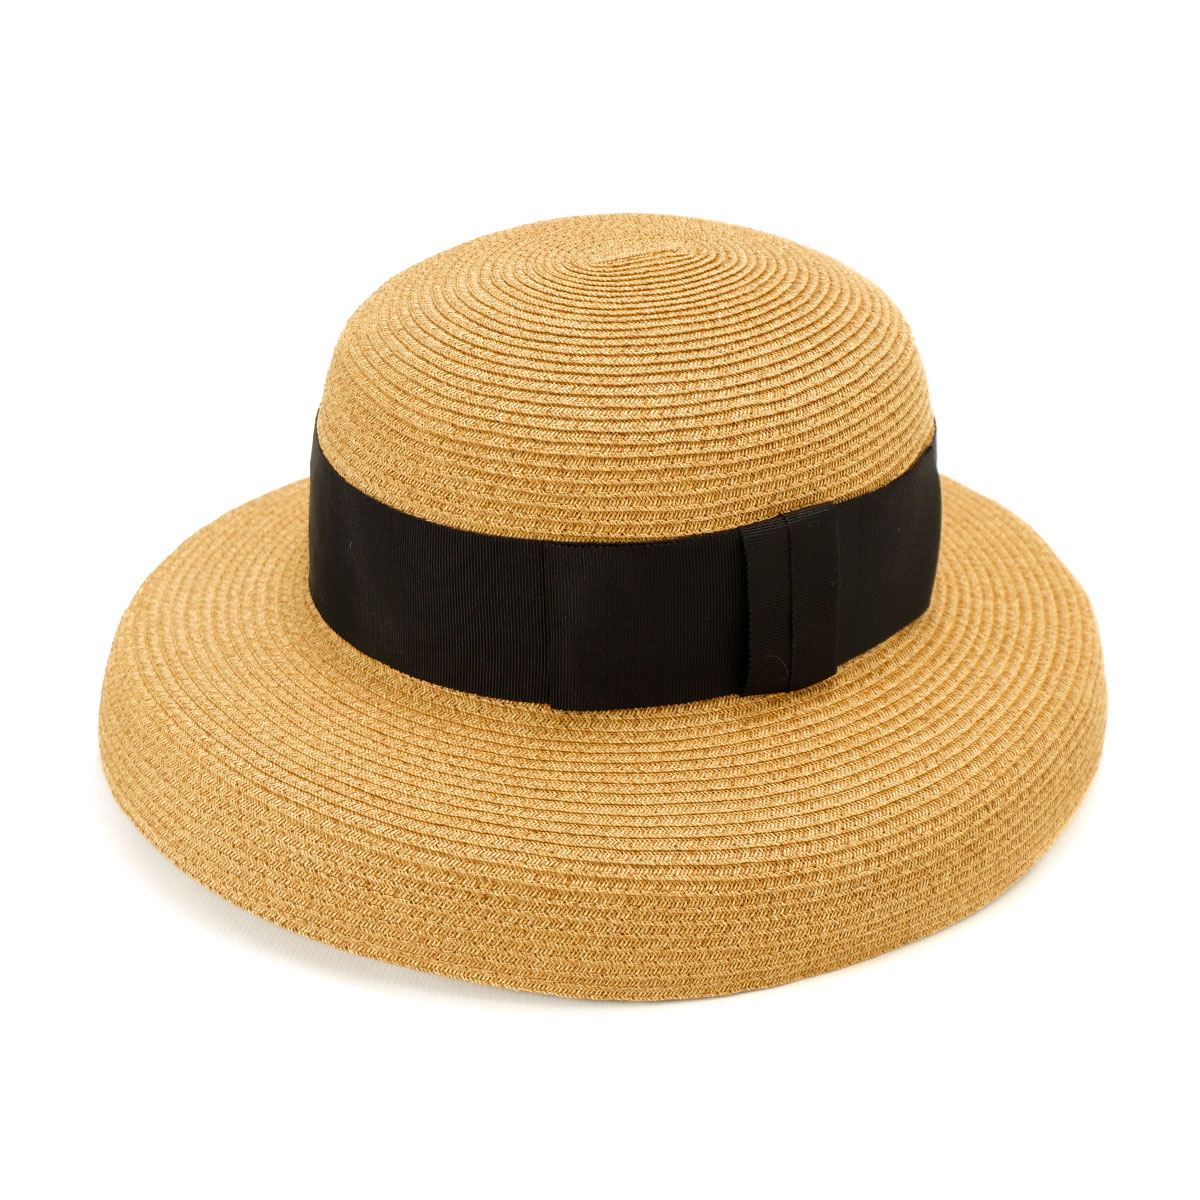 ブレードカサブランカ 日本製 帽子 レディース 麦わら帽子 UV対策 サイズ調整 つば広 あご紐対応...